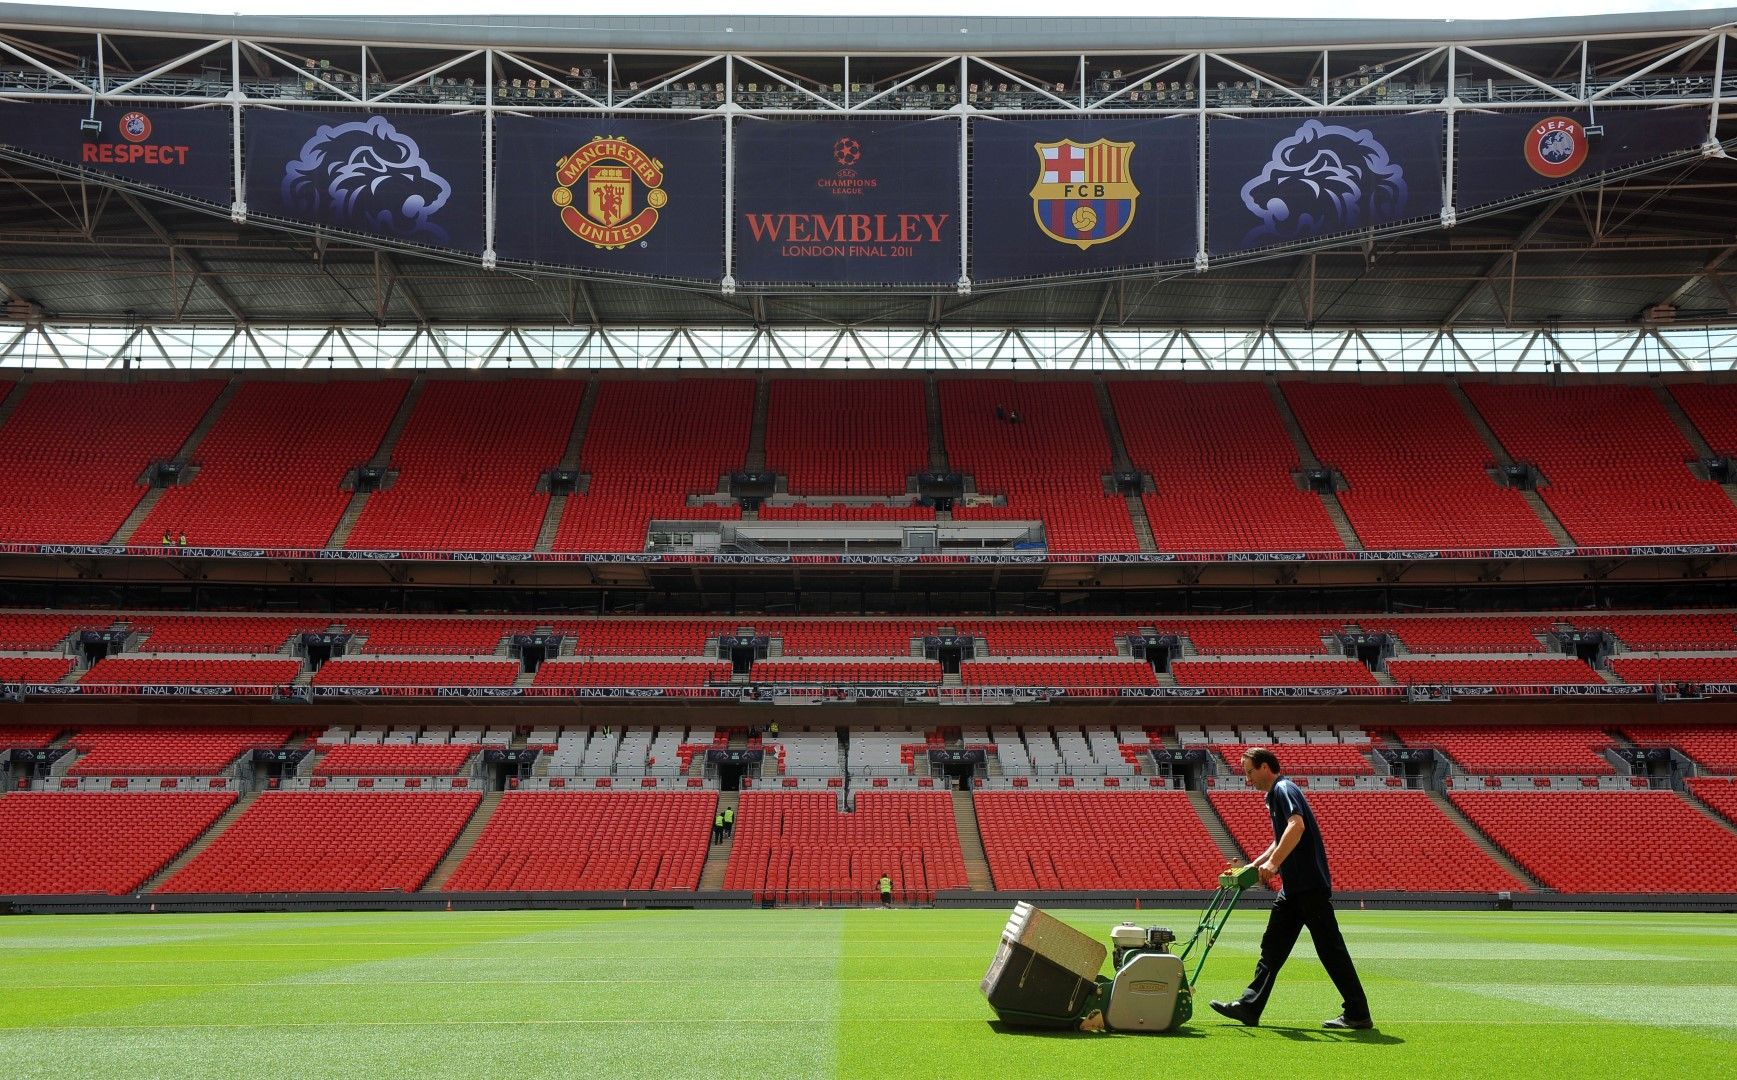 2011 г., Лондон. Стадион "Уембли" е готов да приеме финала Барселона - Юнайтед, повторение на сблъсъка от 2 години по-рано.